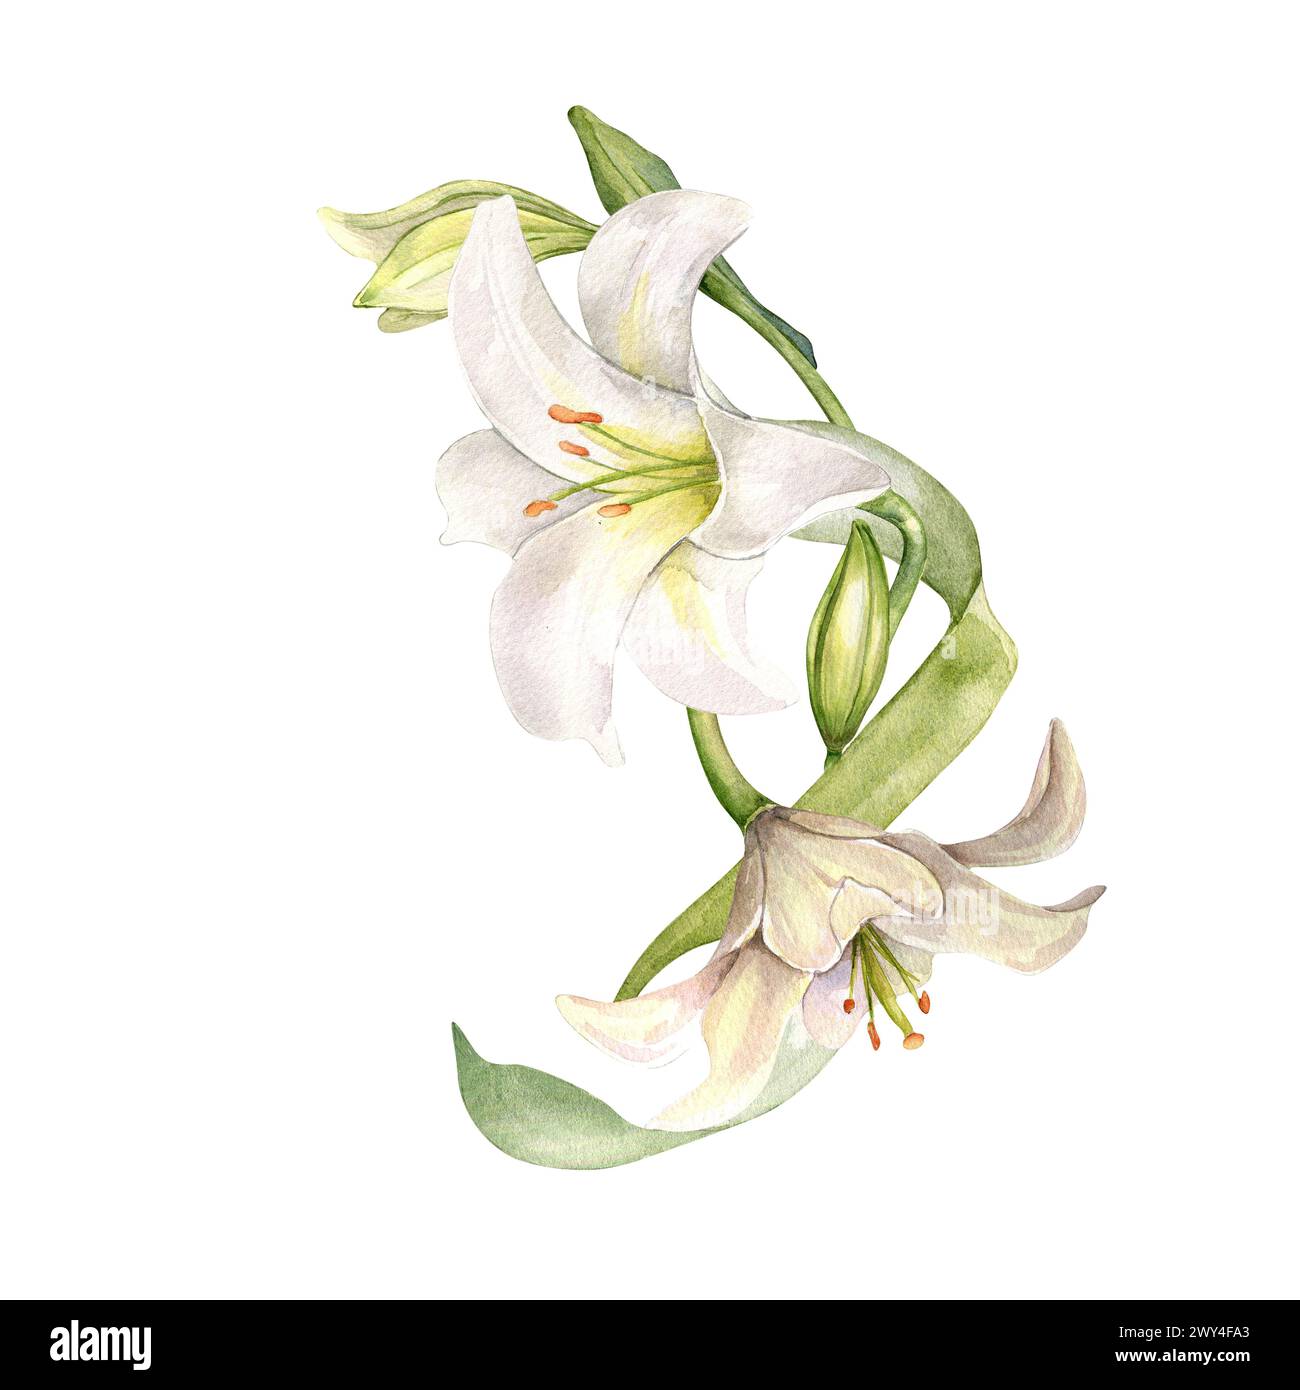 Lys blancs et bourgeons composition d'aquarelle isolée sur blanc. Fleur blanche illustration botanique dessinée à la main. Bouquet de lis et feuilles. Conception pour wedd Banque D'Images